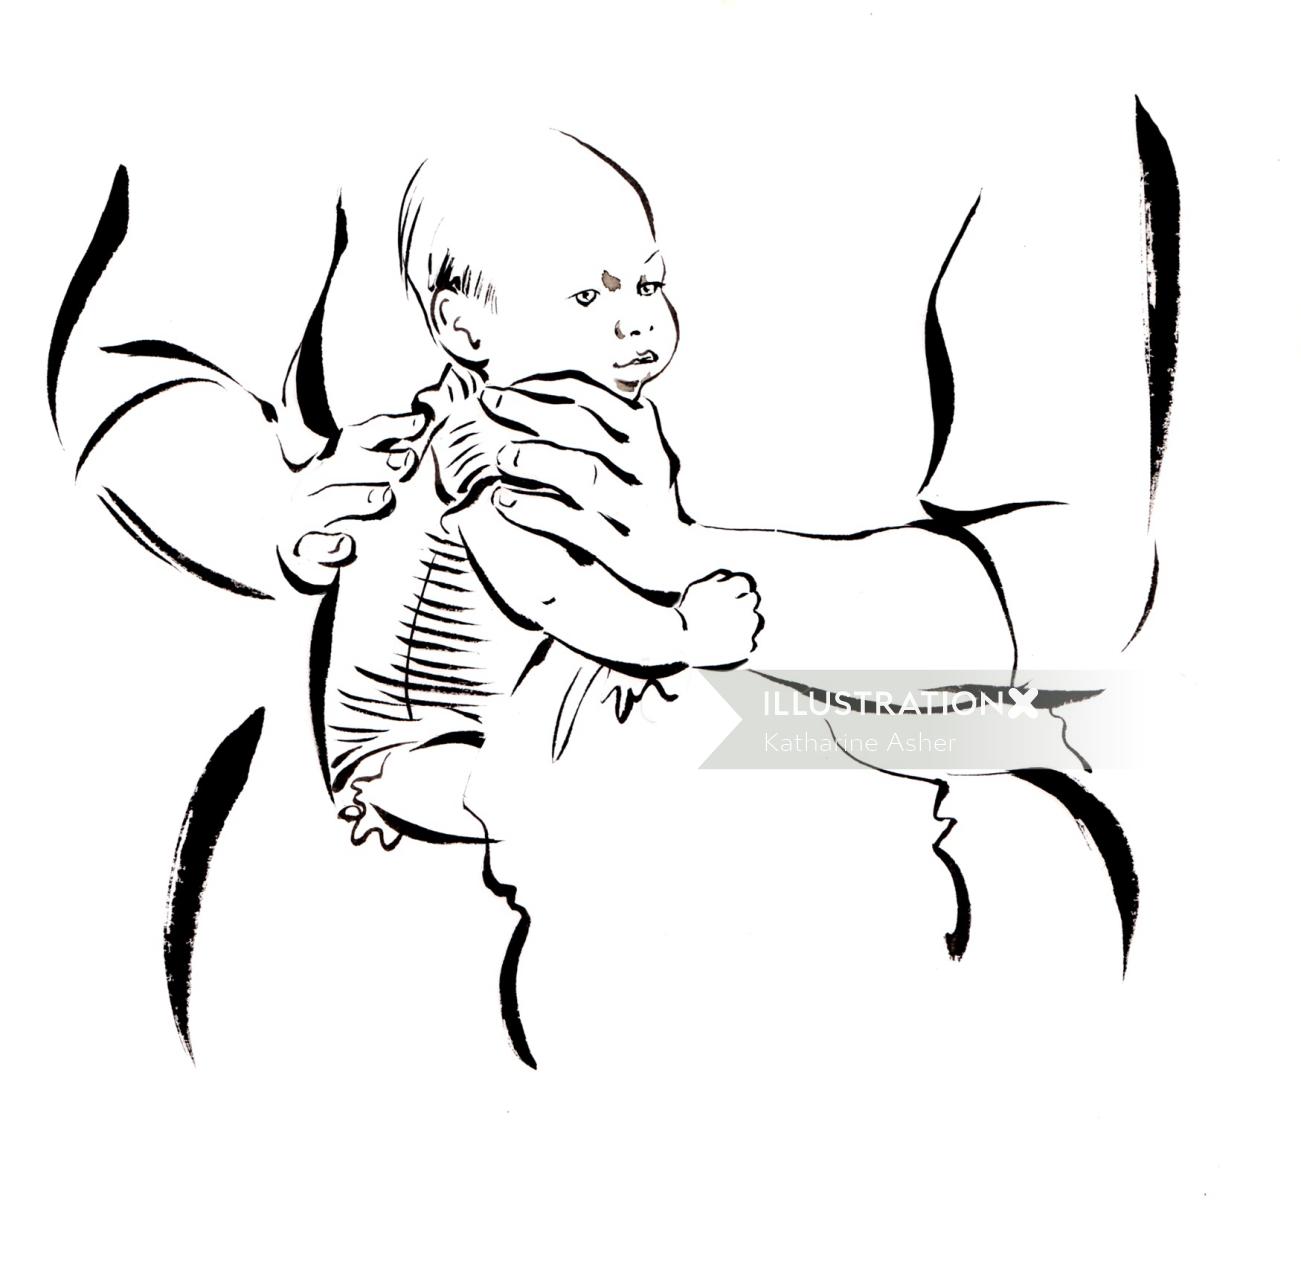 Mãe, segurando a ilustração do bebê por Katharine Asher